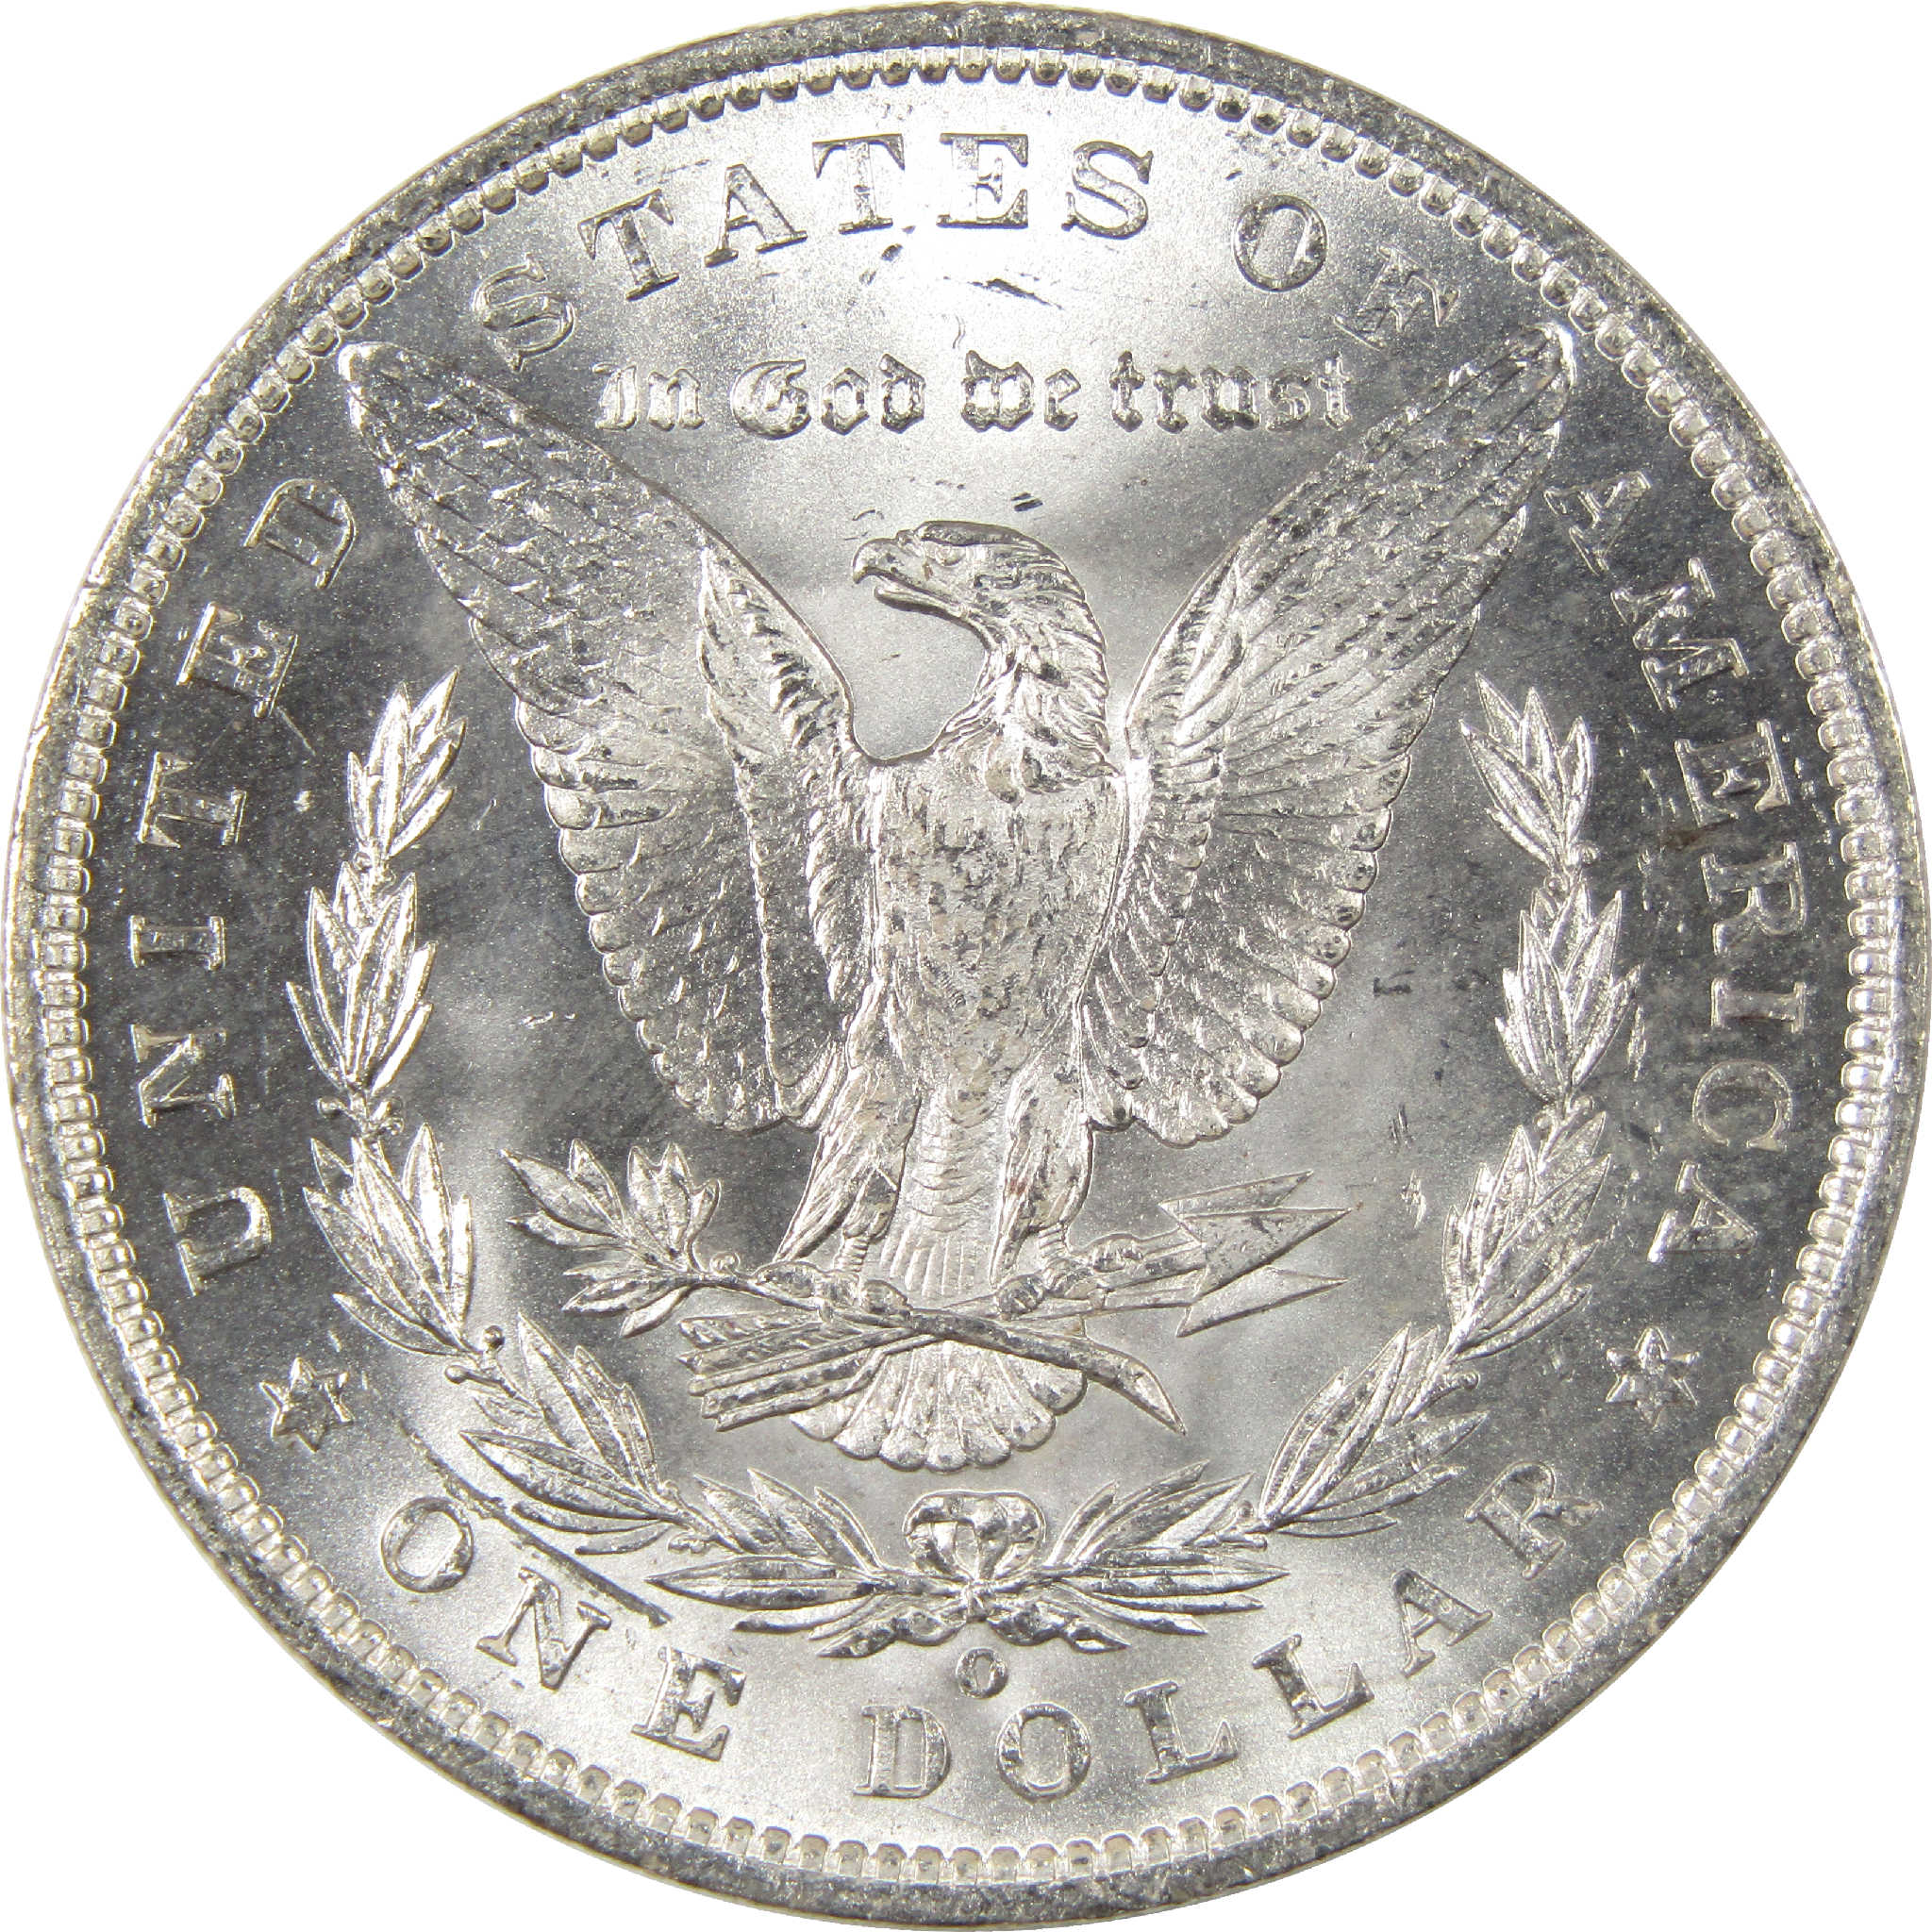 1888 O Morgan Dollar BU Choice Uncirculated Silver $1 Coin - Morgan coin - Morgan silver dollar - Morgan silver dollar for sale - Profile Coins &amp; Collectibles